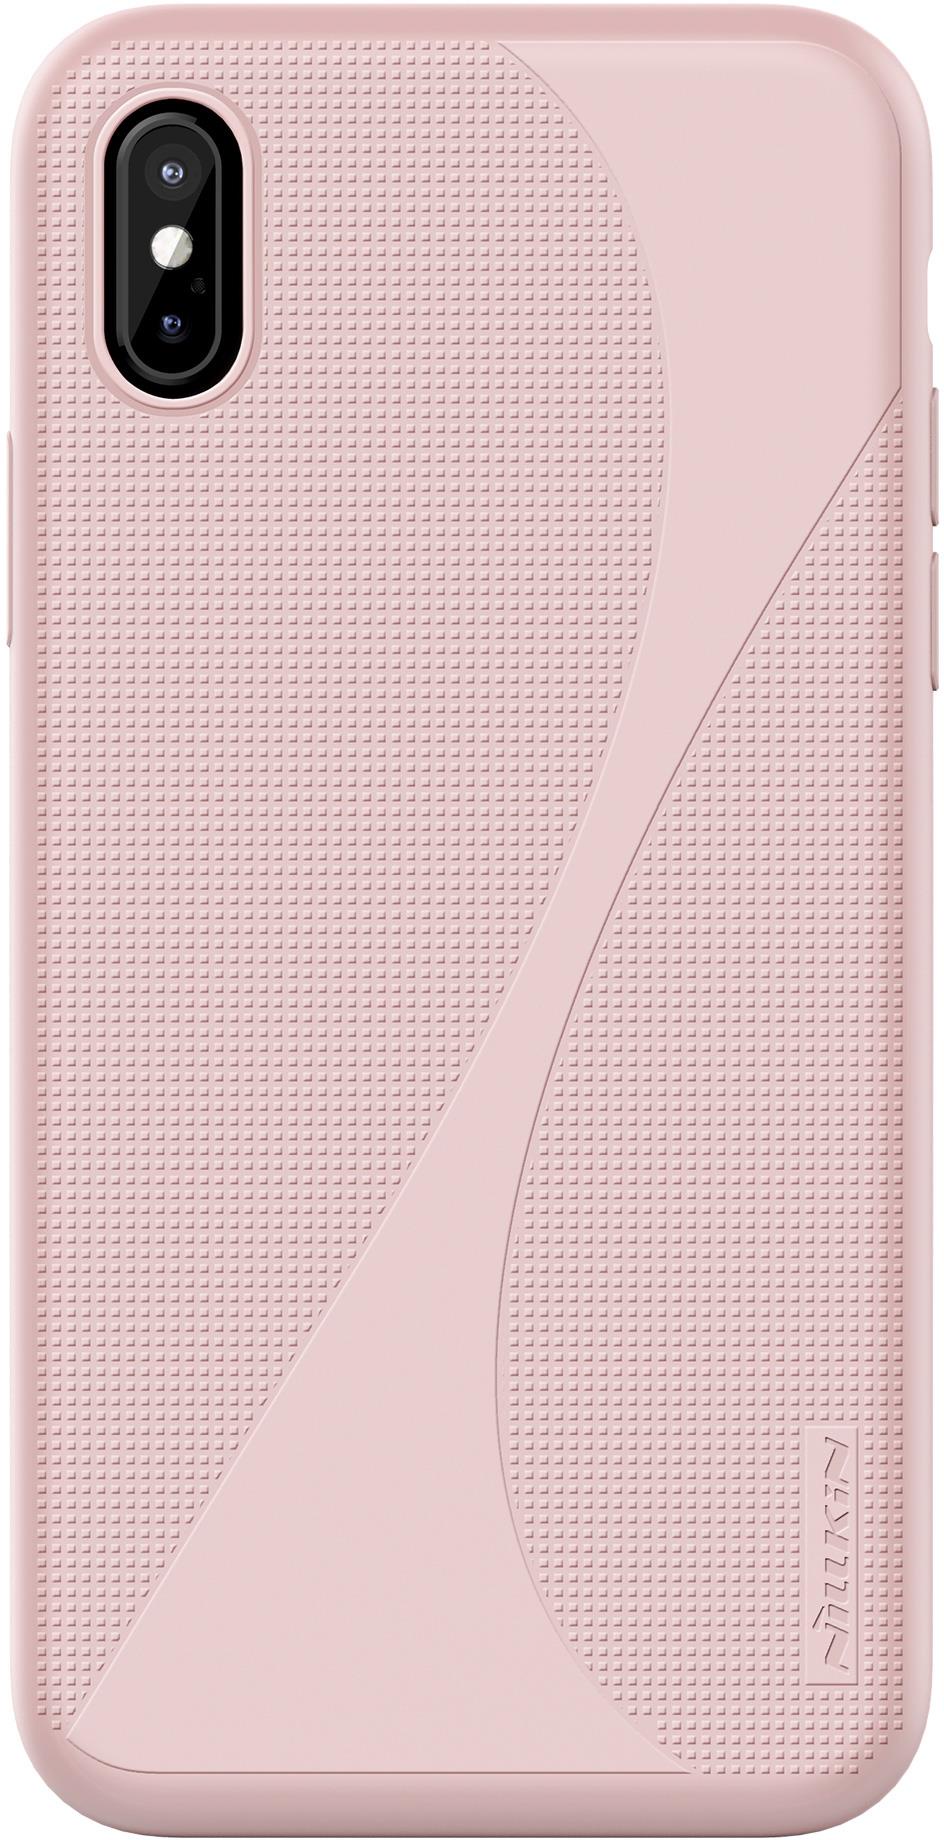 Чехол для сотового телефона Nillkin Flex Case II, 6902048151727, розовый